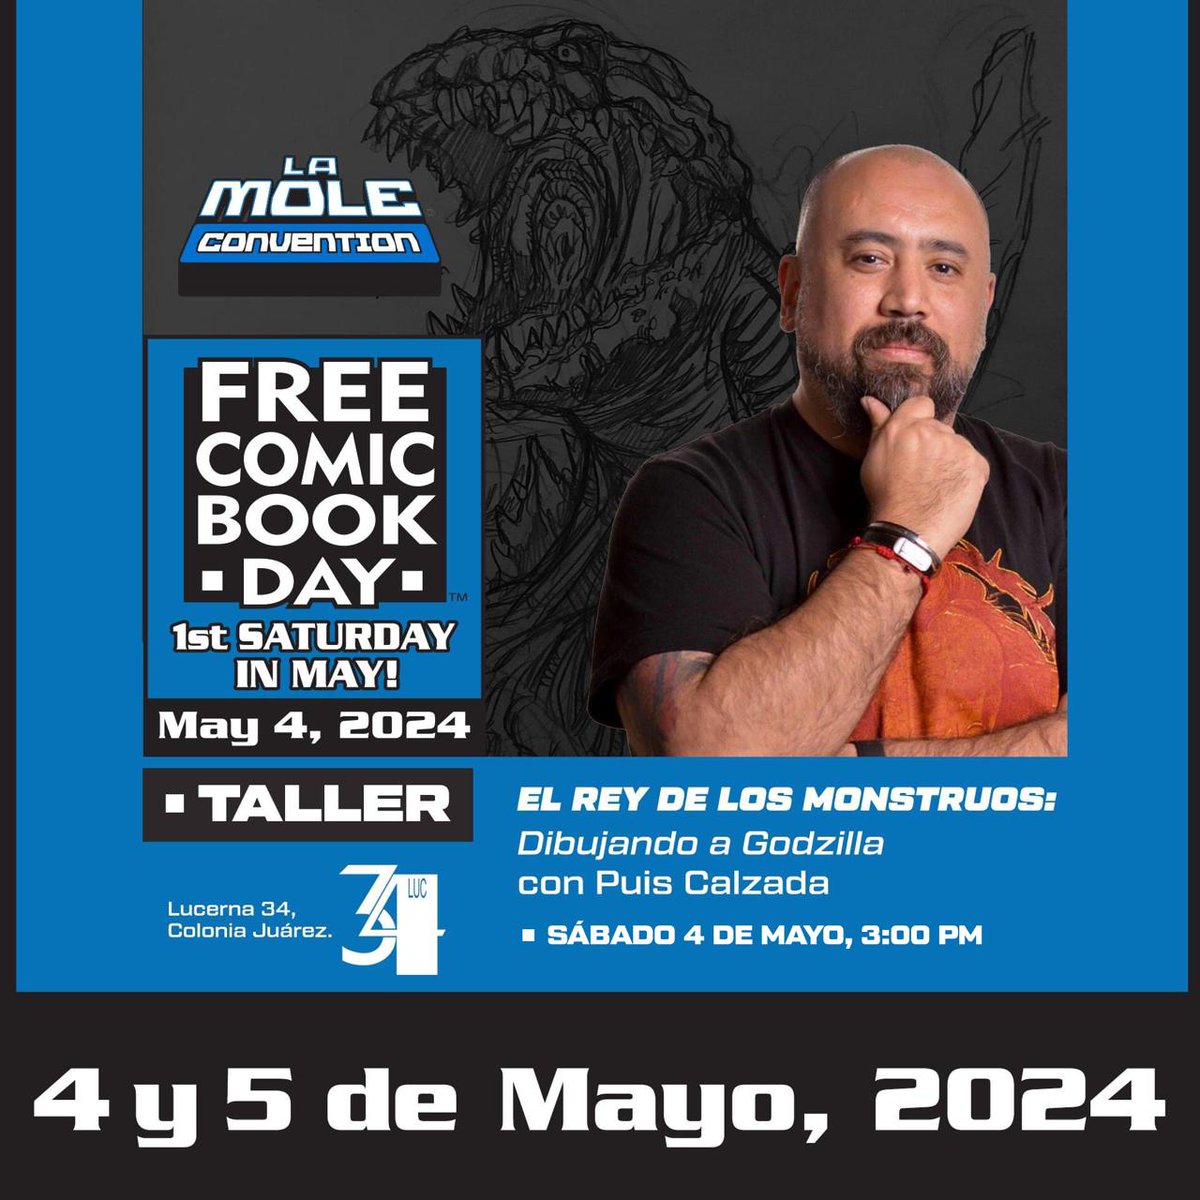 🤘 ¡Taller de dibujo gratuito con @PuisCalzada! ✏️ Sábado 4 de mayo, 3 pm (segundo turno). CUPO LIMITADO. 🎟️ Pide tu entrada gratis para el #FreeComicBookDay de #LaMoleConvention en registro-fcbd-la-mole.boletia.com. #FCBD2024 #FCBDLaMole